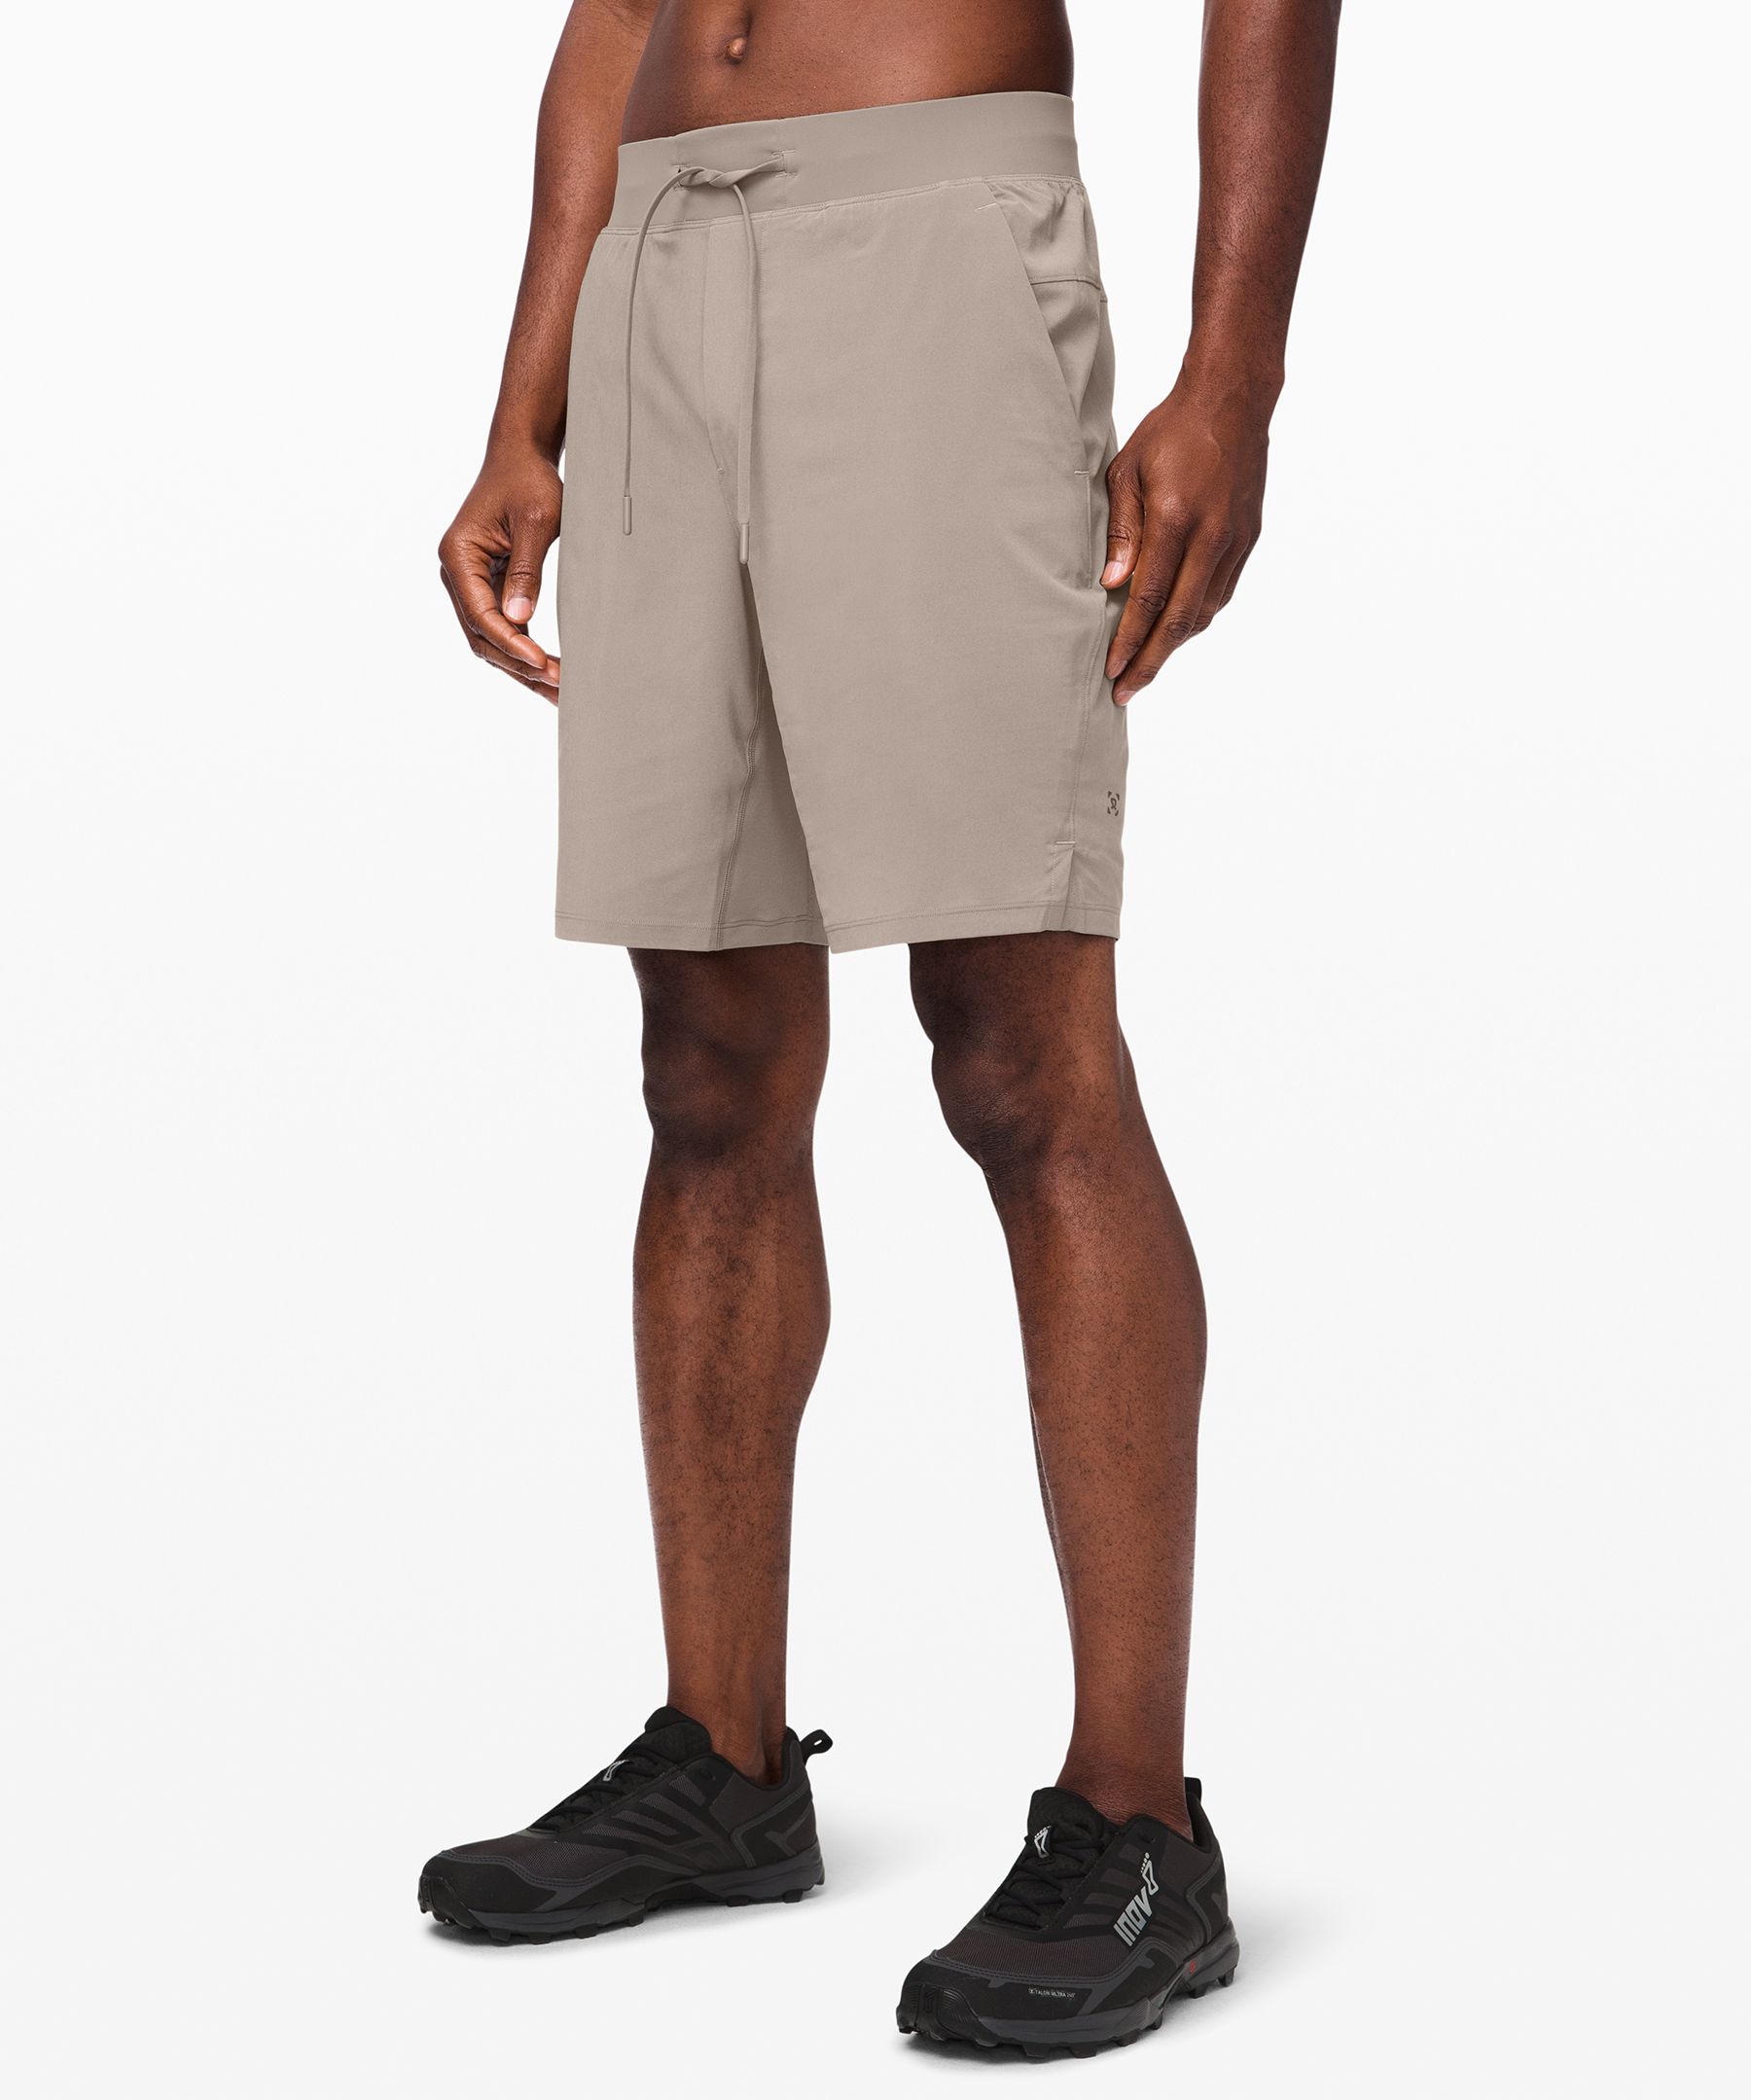 lululemon men's 9 inch shorts